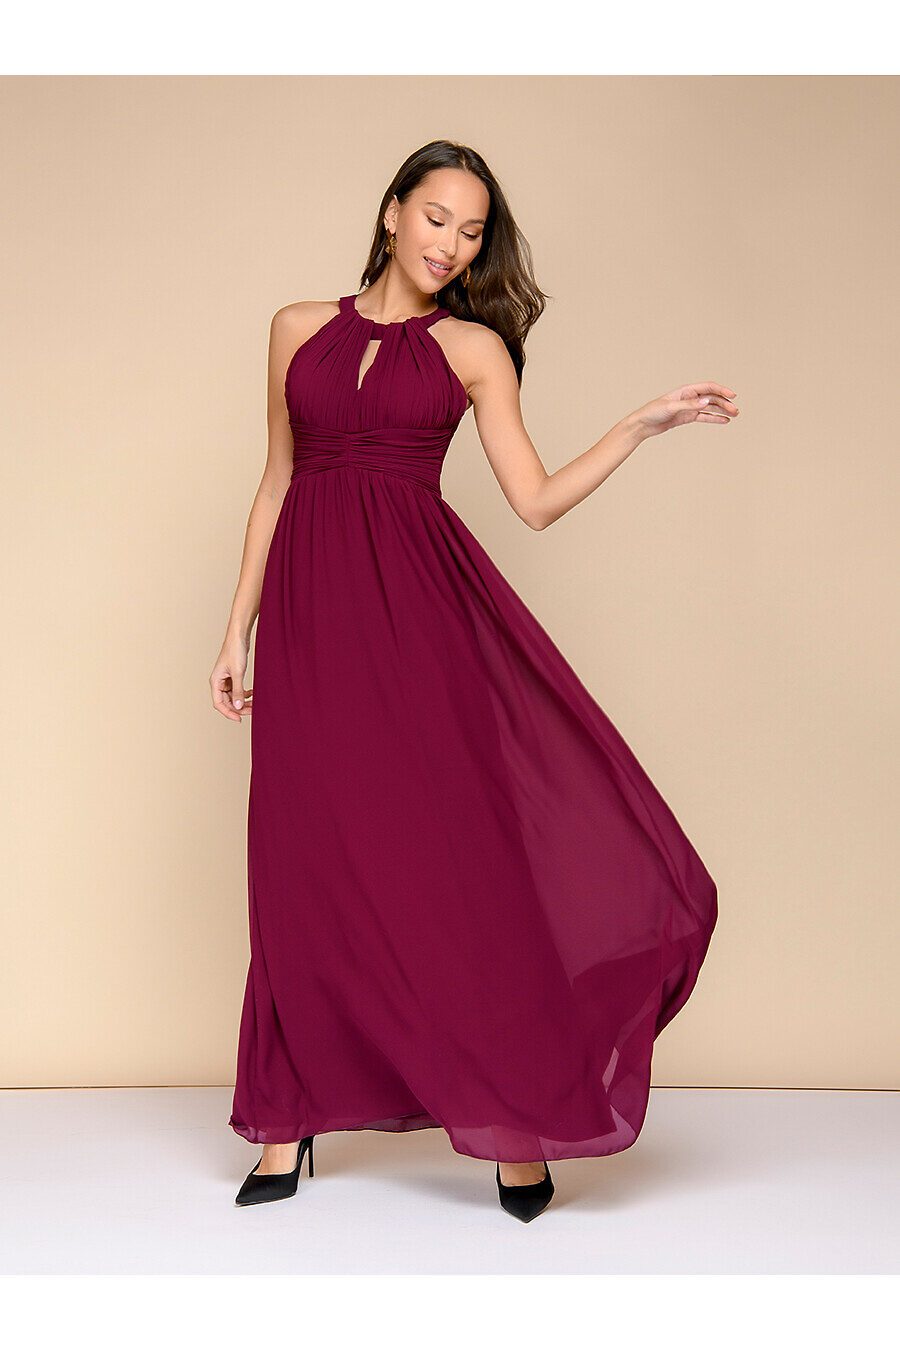 Платье для женщин 1001 DRESS 775601 купить оптом от производителя. Совместная покупка женской одежды в OptMoyo